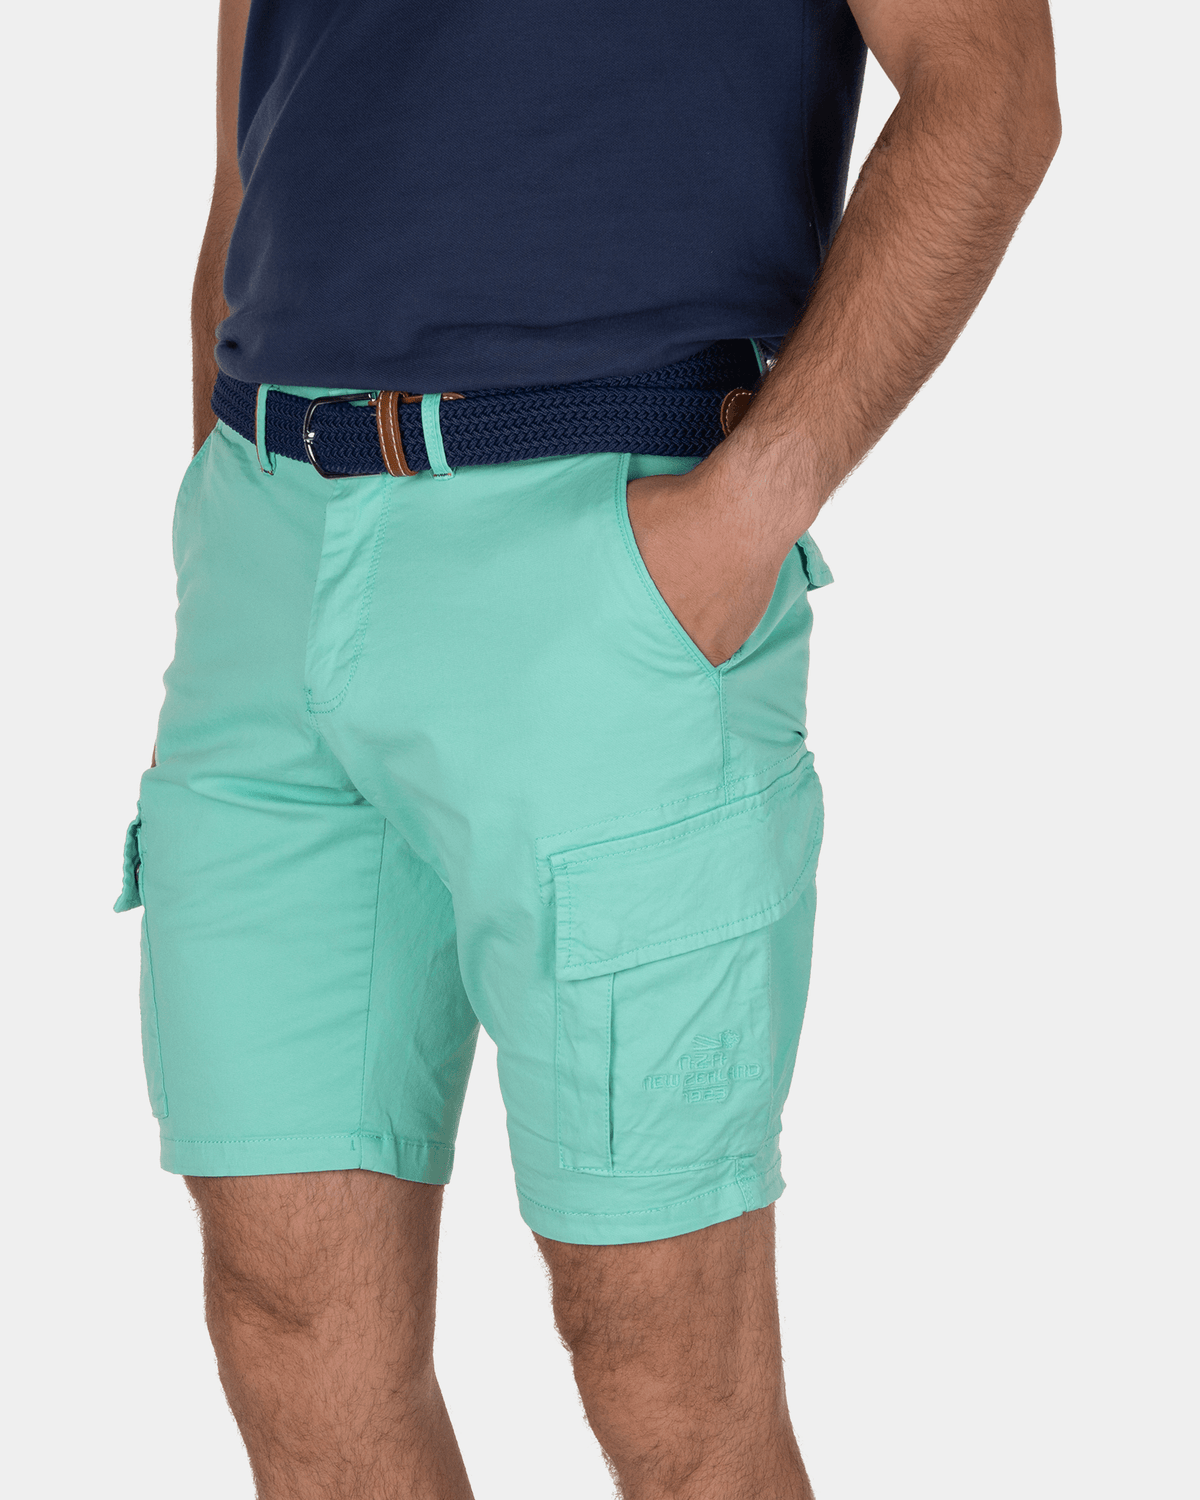 Cargo shorts Mission Bay - Aquamarine